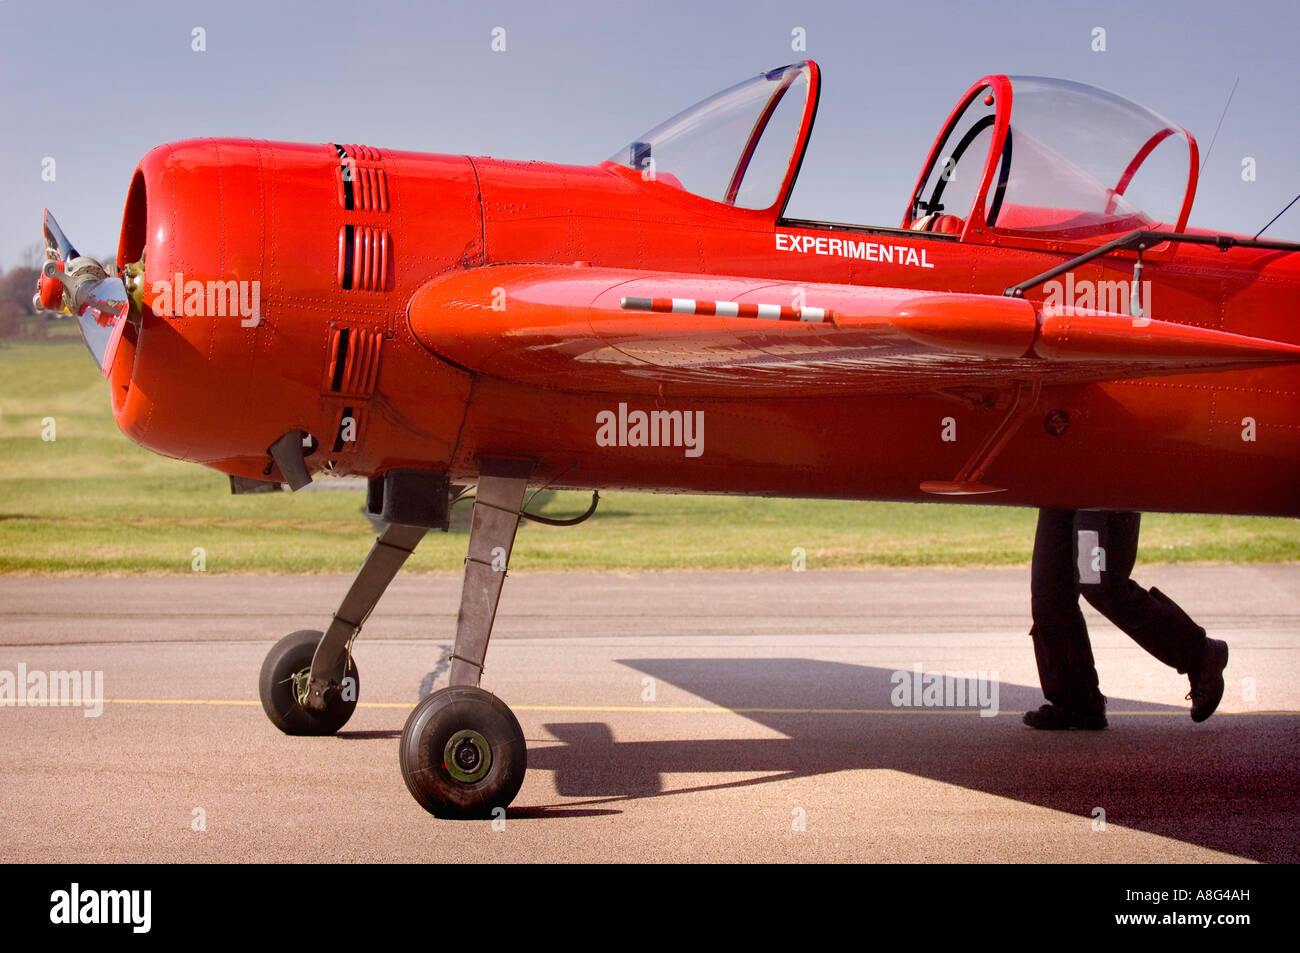 Wingnut: Un aereo rosso brillante sembra avere gambe, come un pilota spinge il suo aereo chiamato 'sperimentale' su una pista all'aeroporto di Shoreham, West Sussex, Regno Unito Foto Stock